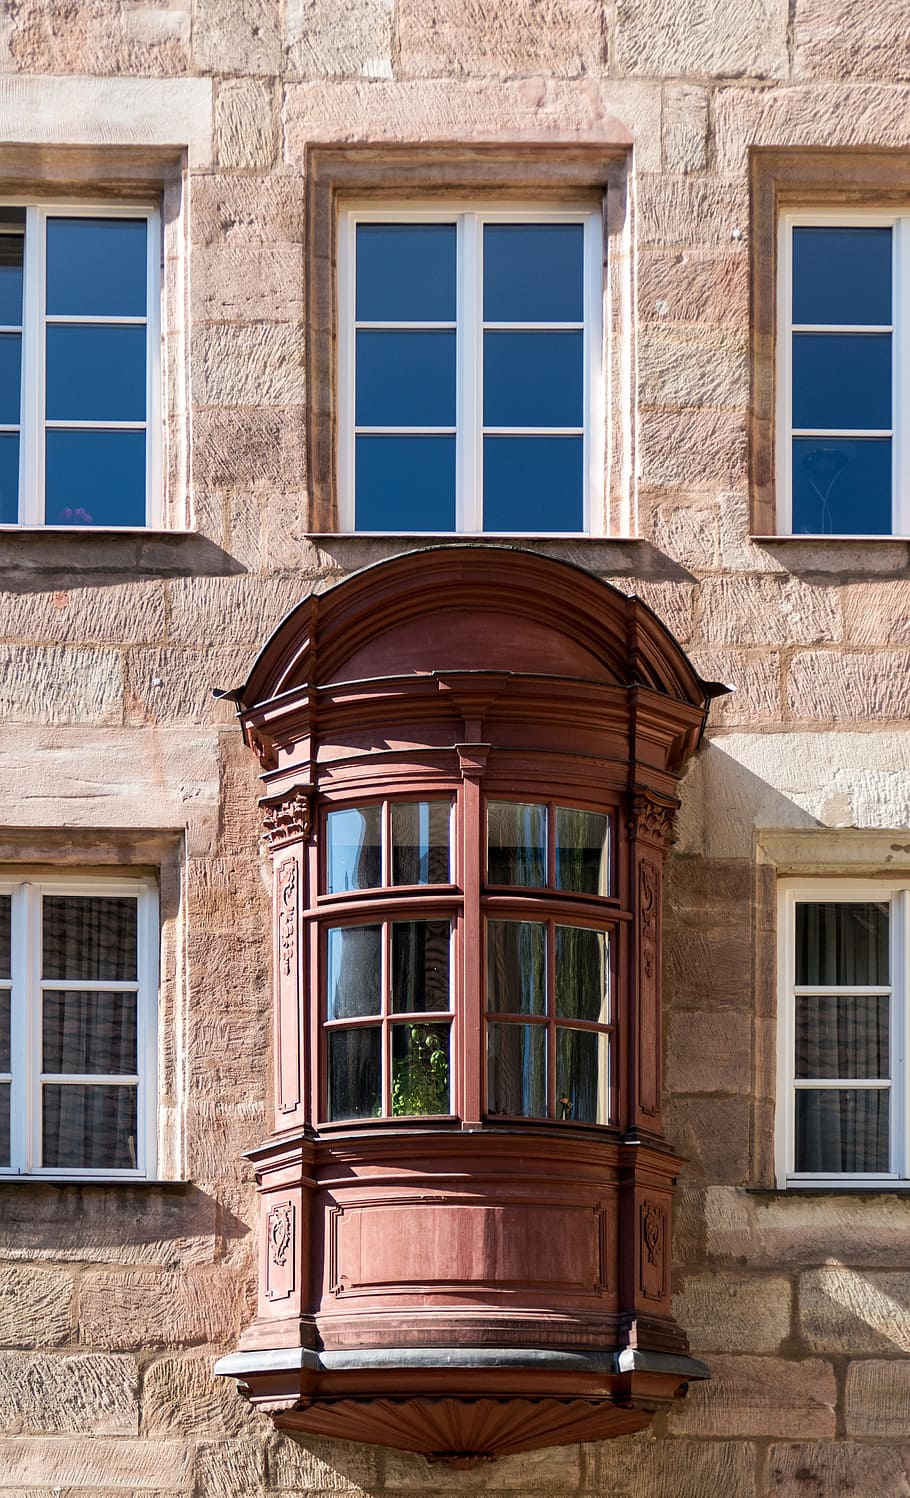 Arsitektur, Bay Window, chörlein, kota tua, bangunan, historis, fasad, rumah, tua, bagian dari rumah